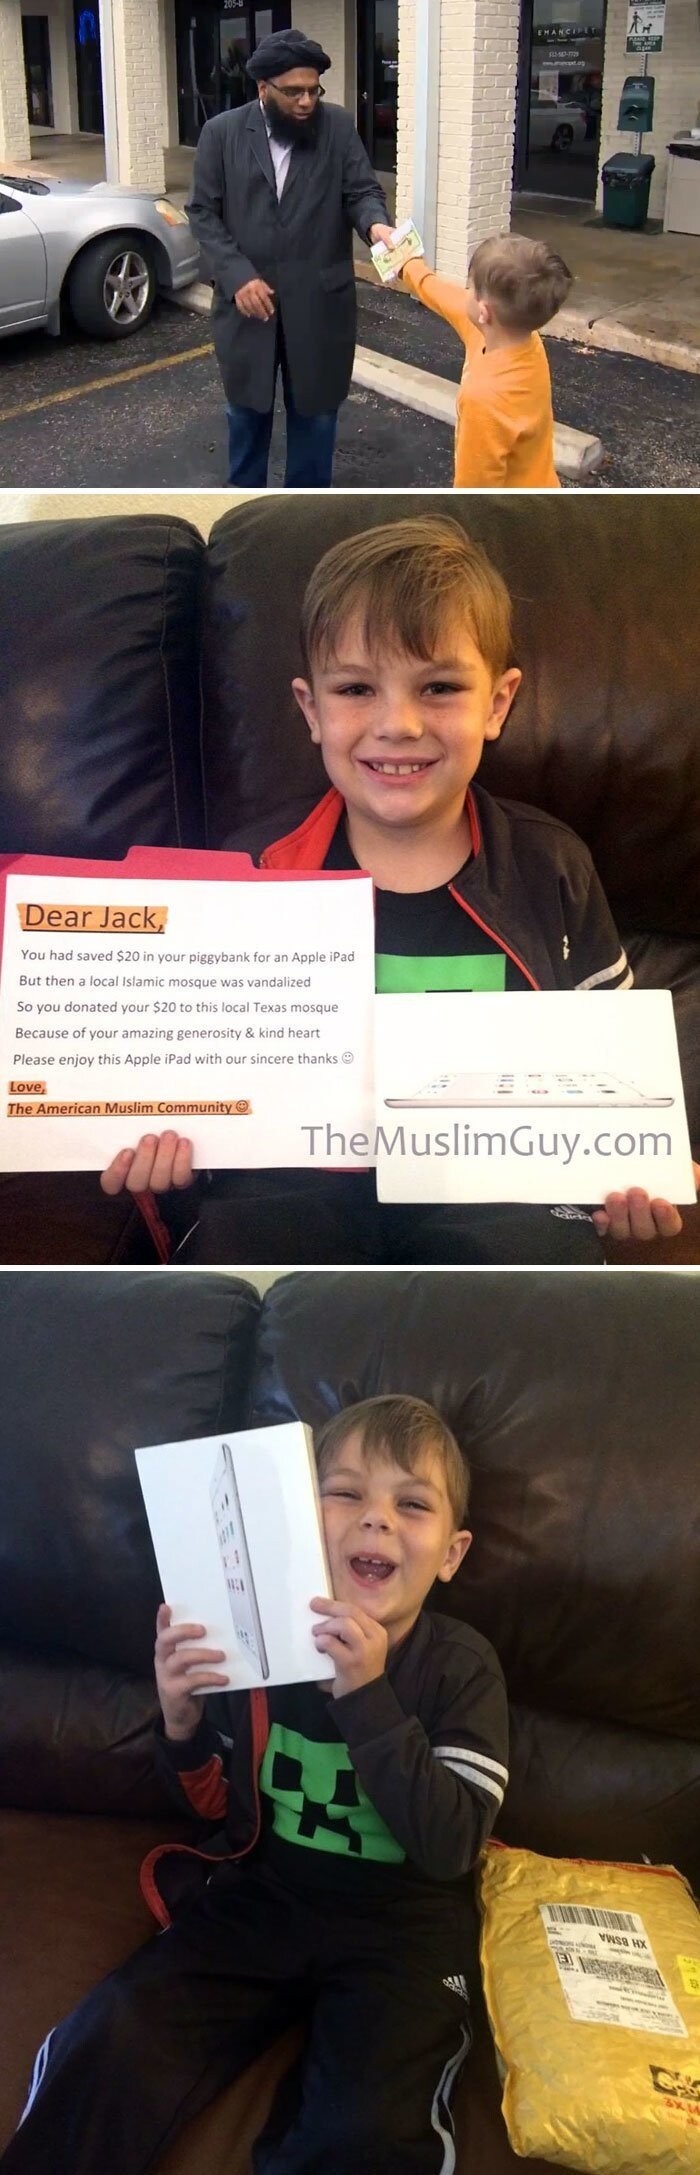 7-летний мальчик пожертвовал на восстановление разрушенной мечети 20 долларов из своей копилки. Он копил деньги на iPad. И он его получил - с благодарственным письмом от Американского мусульманского сообщества.